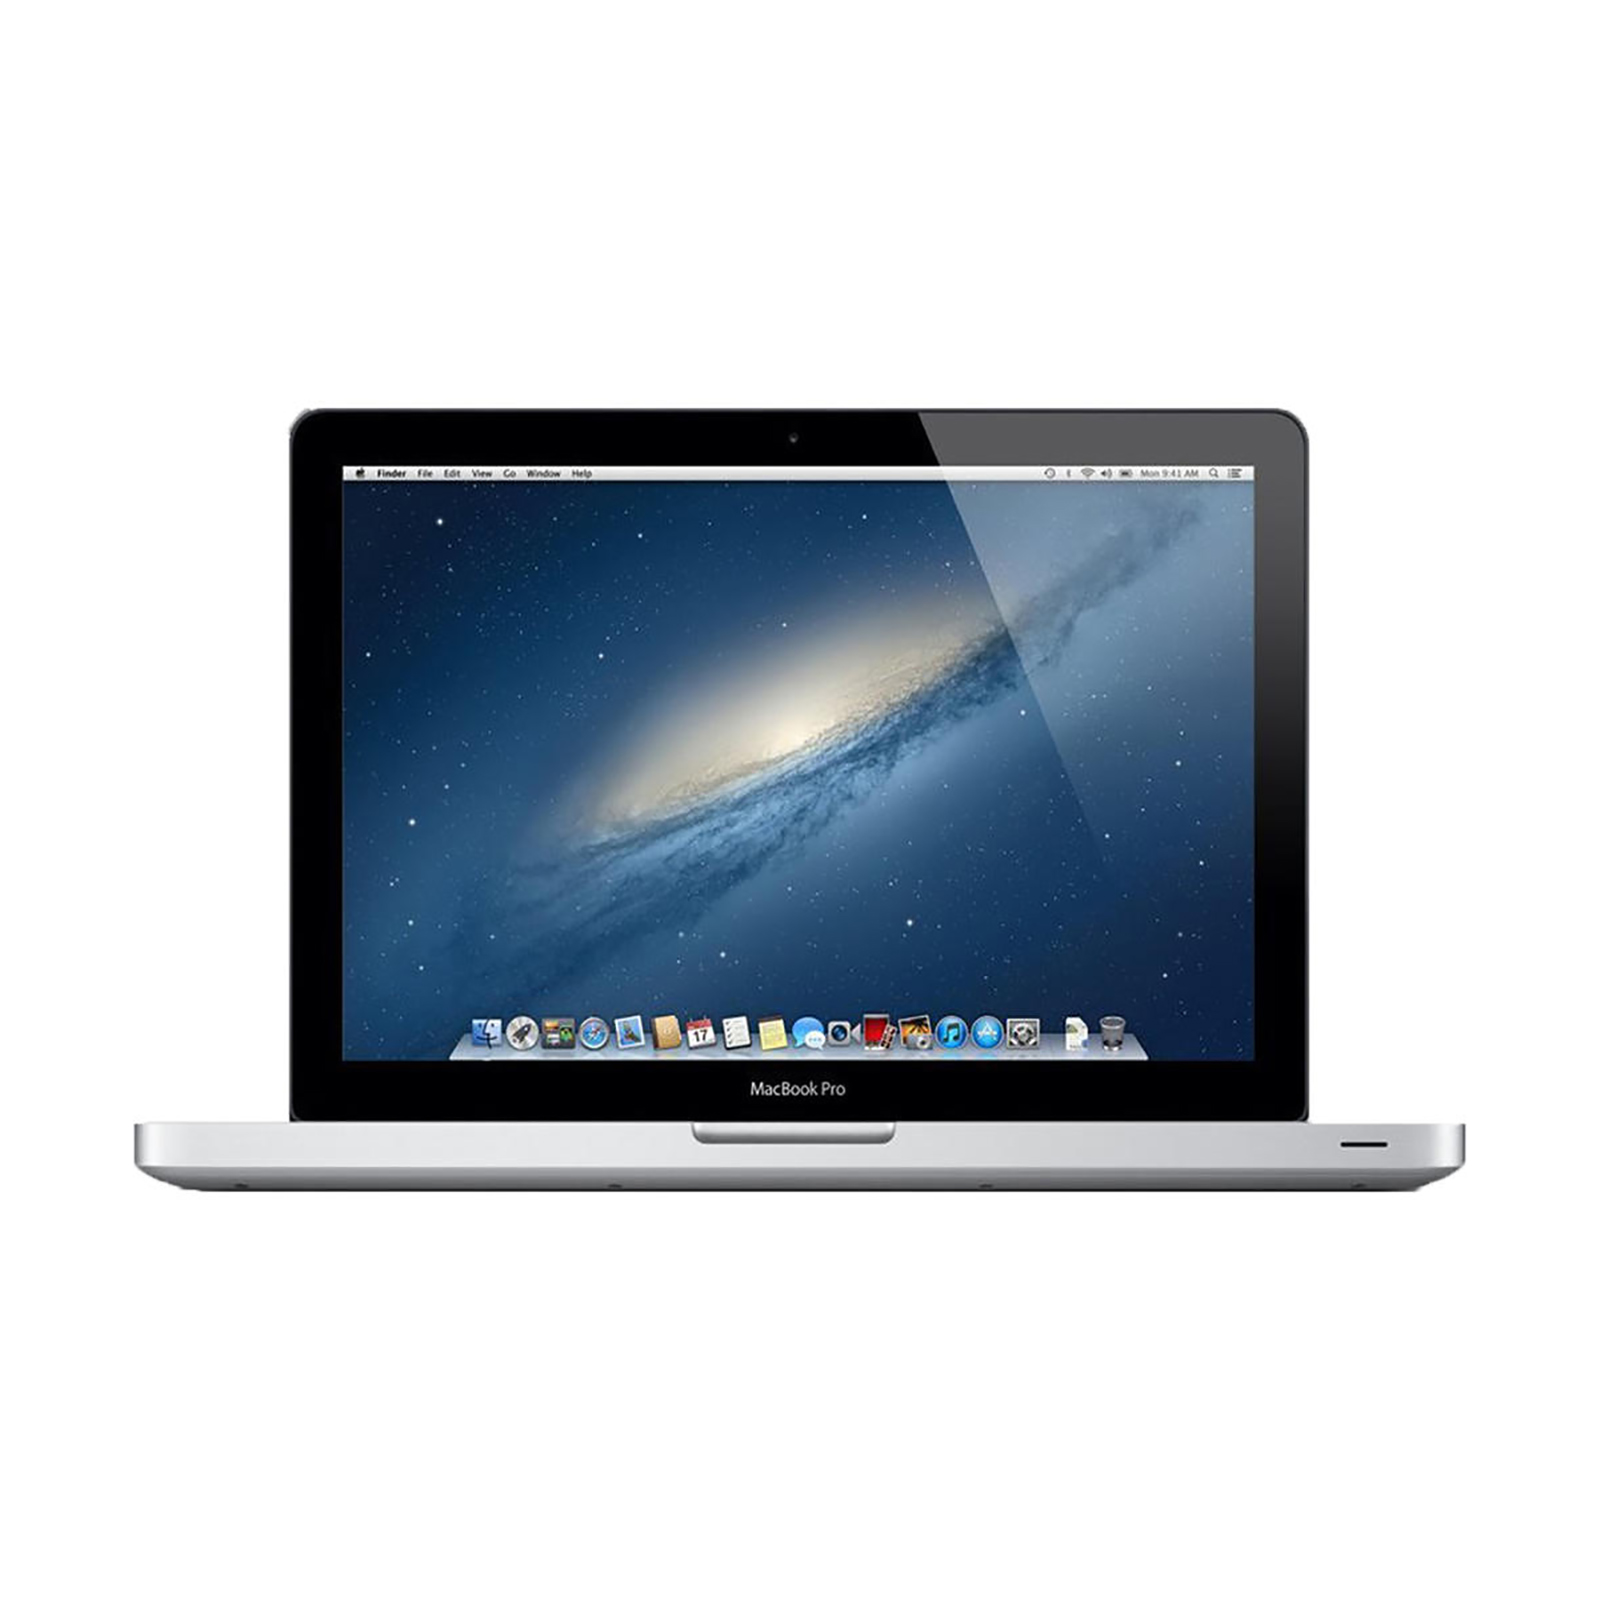 schuifelen Maak een naam Ijsbeer Apple 13.3" MacBook Pro w/ Intel Core i5 Processor - Sears Marketplace